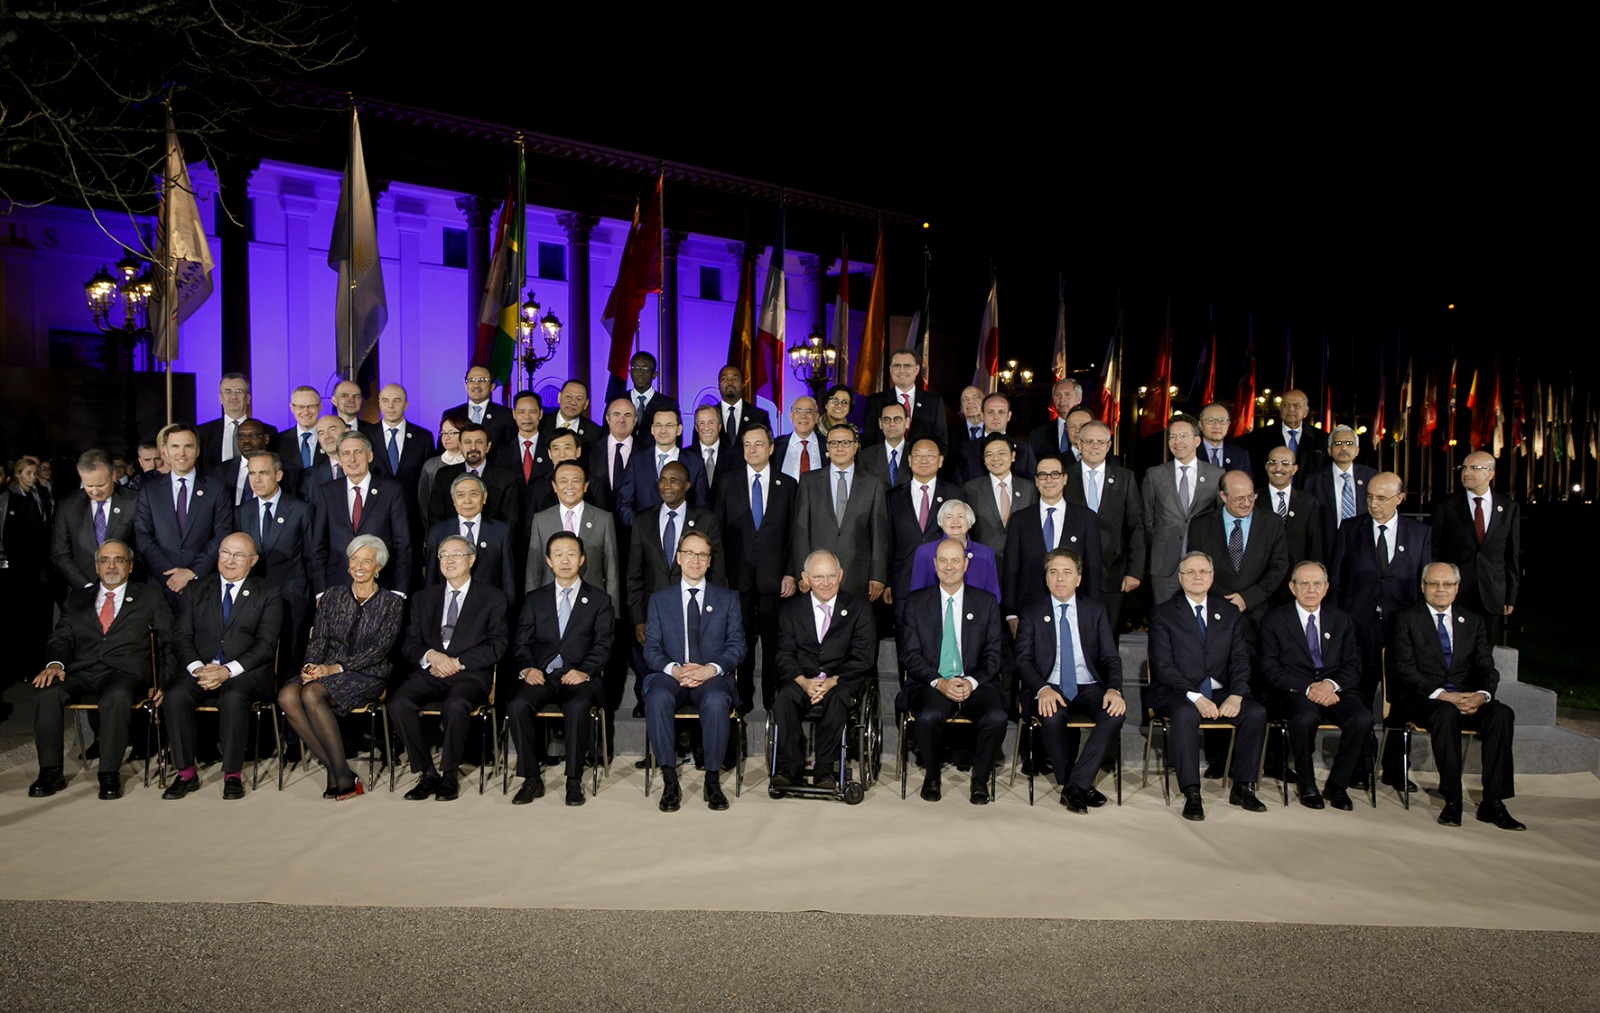 Los ministros de Finanzas y gobernadores de Bancos Centrales del G20 conversaron además sobre el desempeño de la economía global. (SHCP)